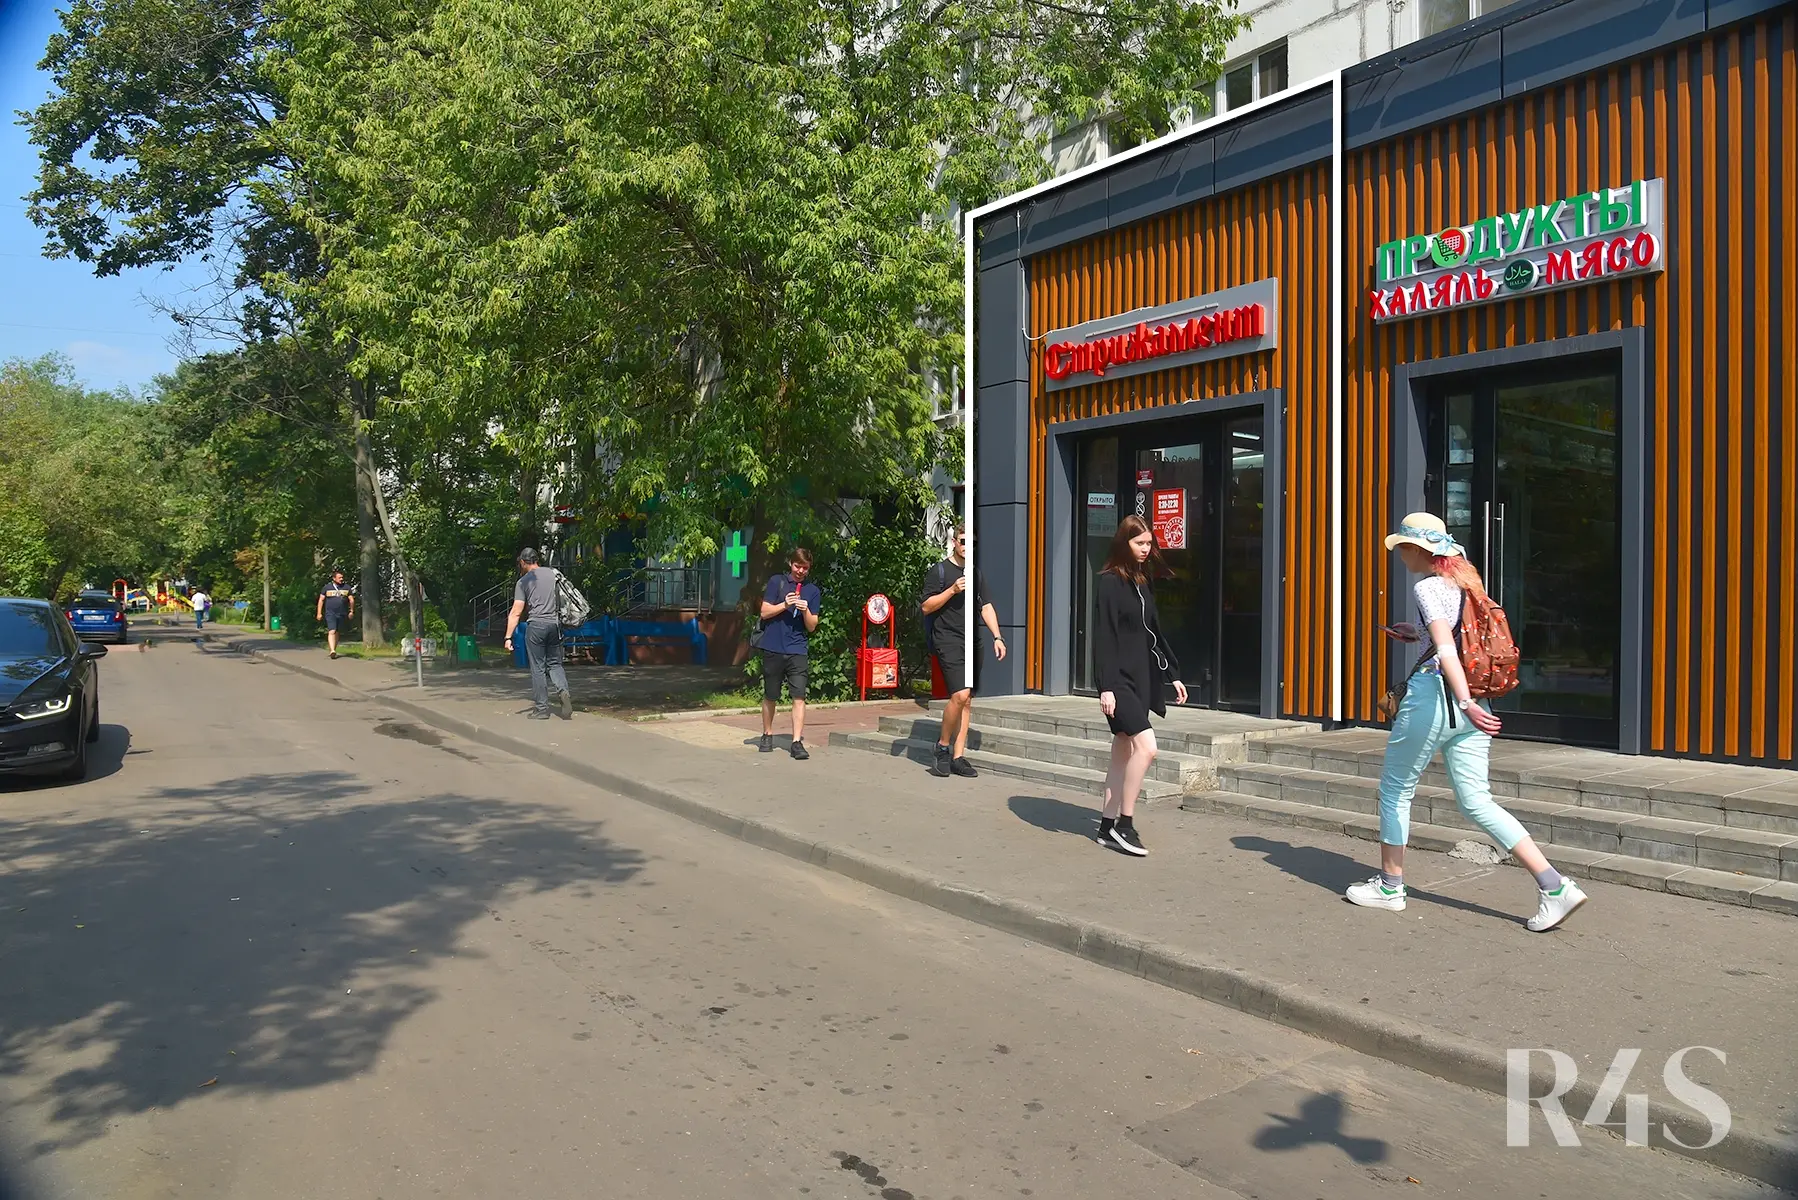 Продажа готового арендного бизнеса площадью 100.4 м2 в Москве: Краснодарская, 57к3 R4S | Realty4Sale